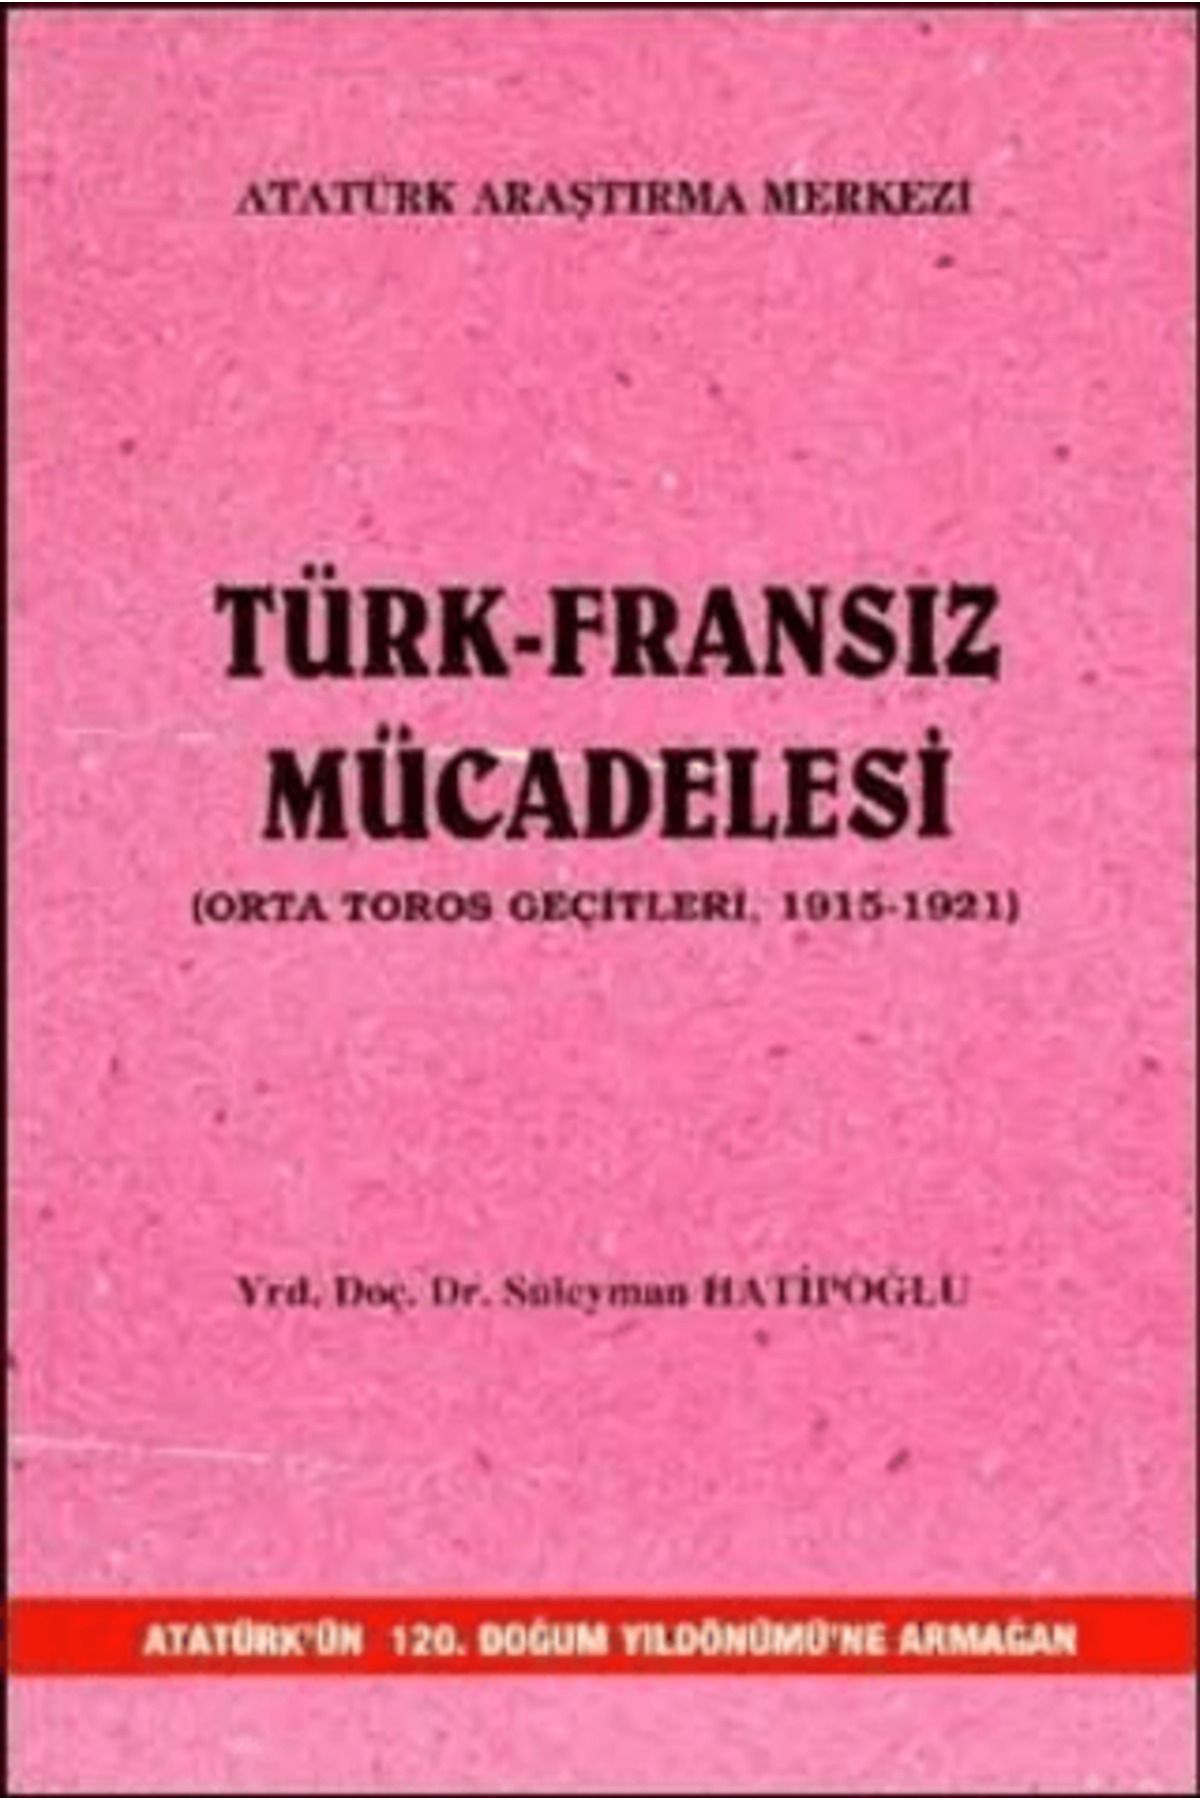 Atatürk Araştırma Merkezi Türk-Fransız Mücadelesi